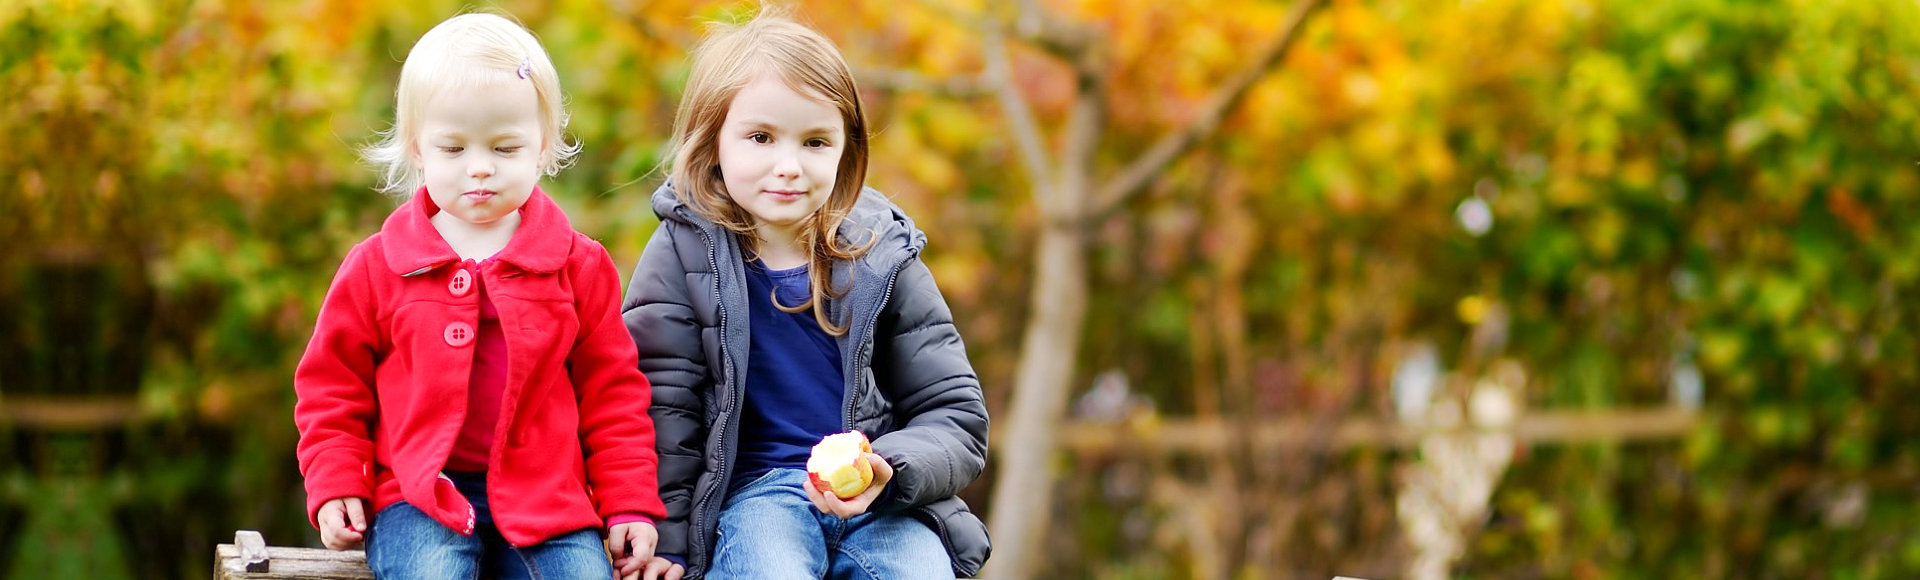 two children eating apple